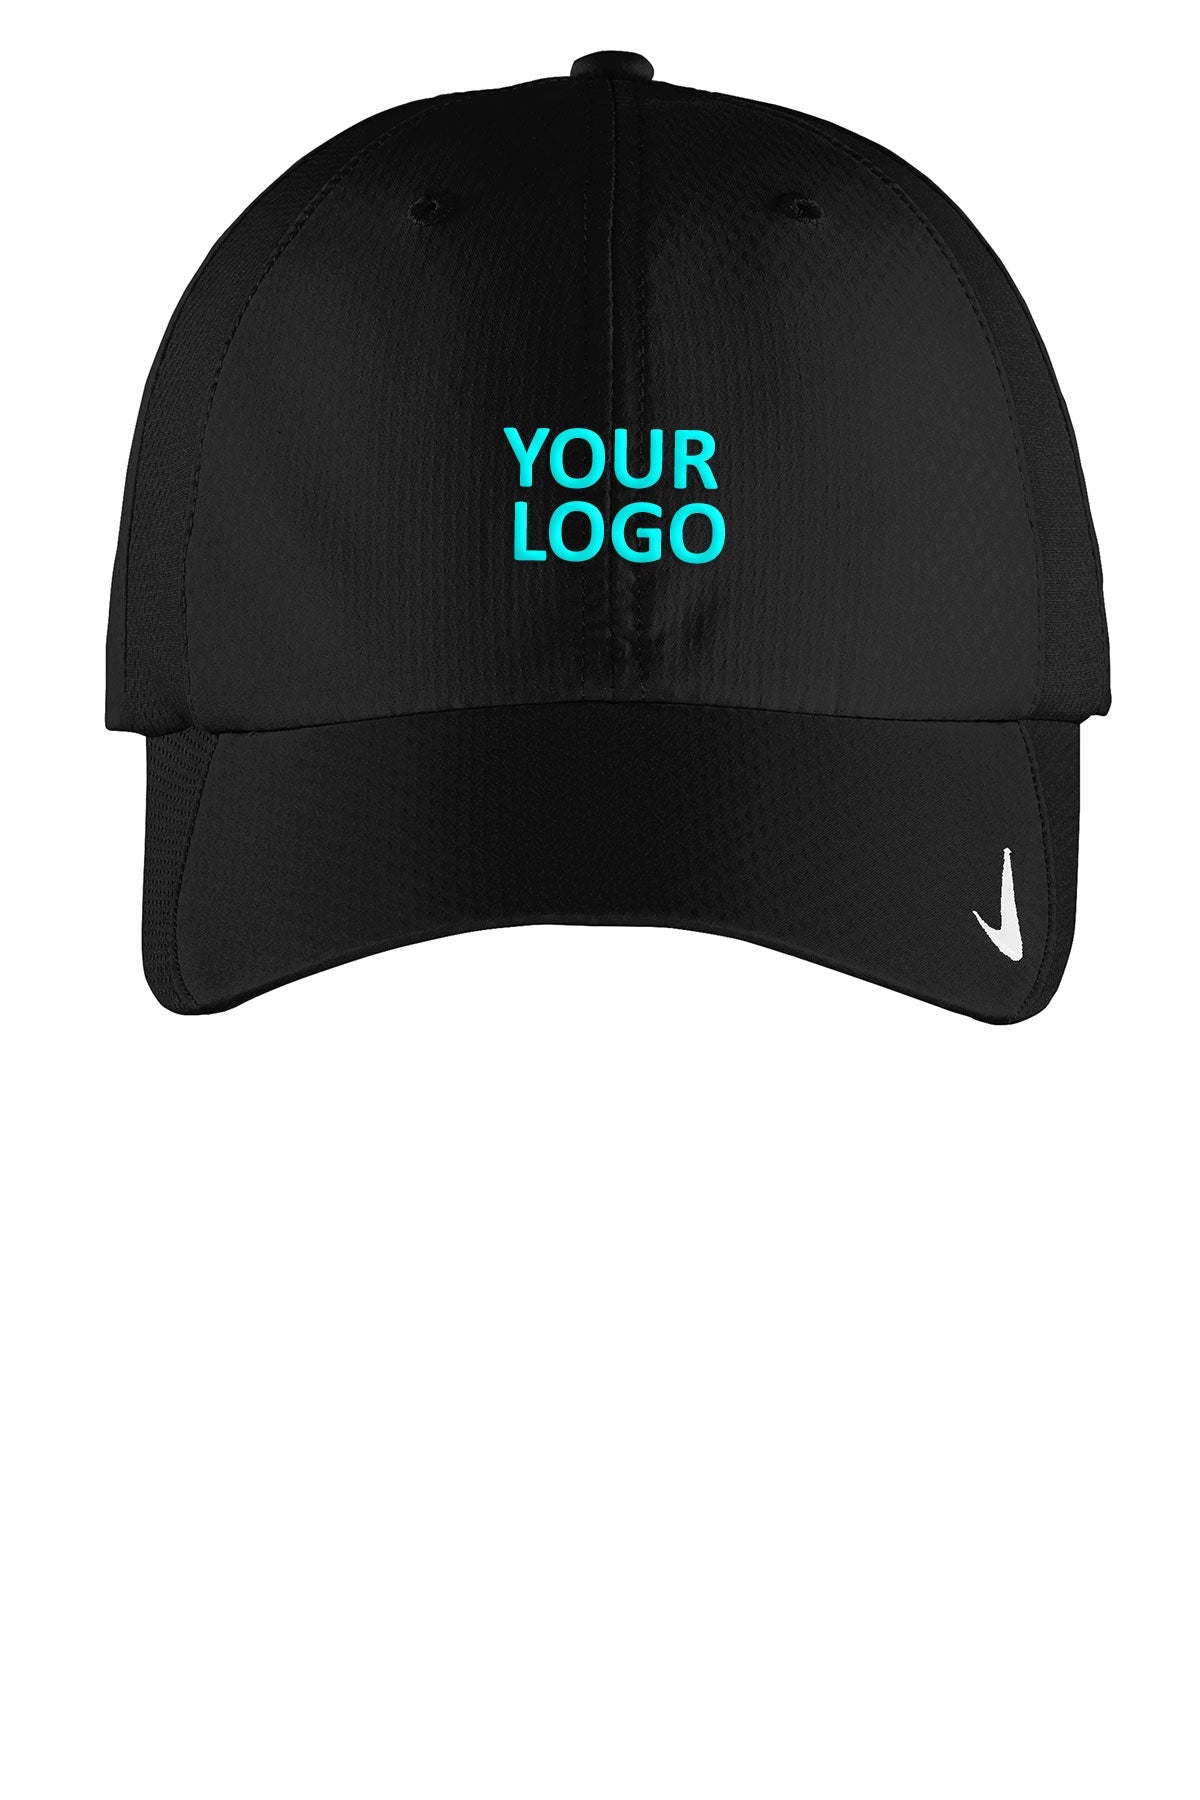 Custom Nike Sphere Dry Cap Black